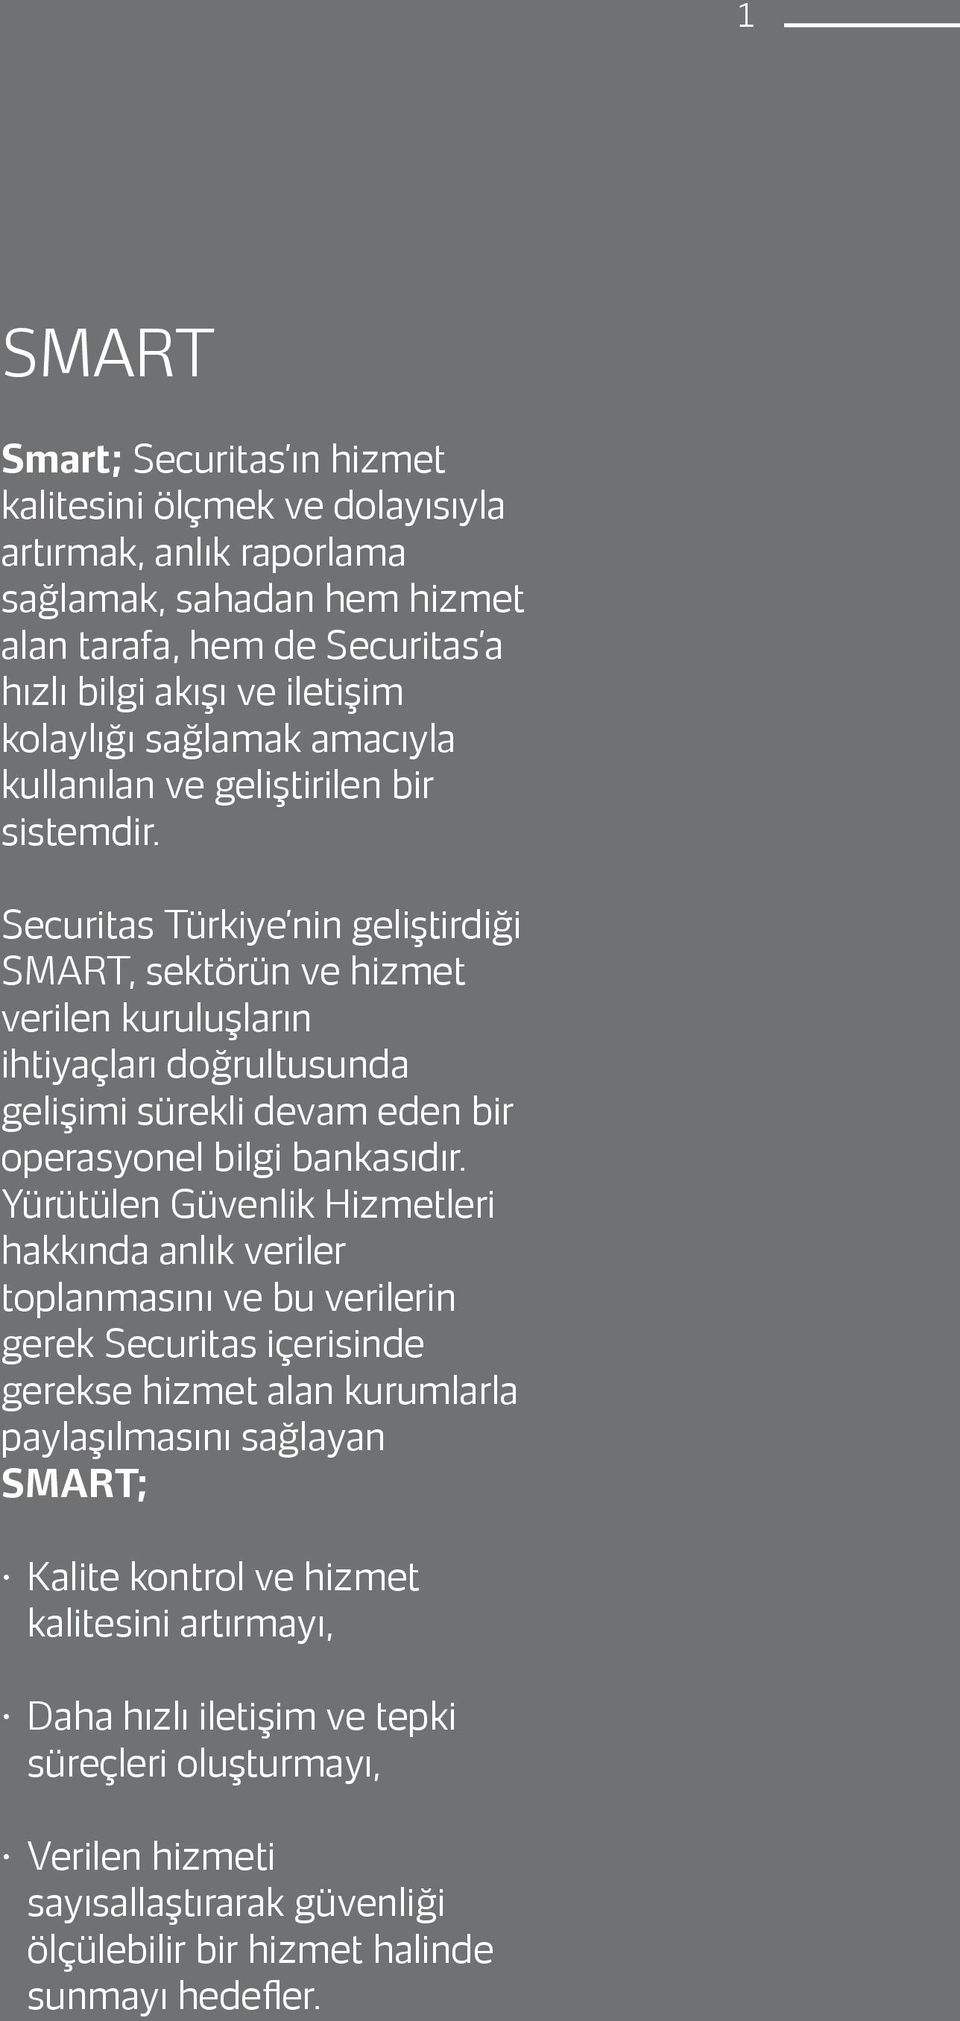 Securitas Türkiye nin geliştirdiği SMART, sektörün ve hizmet verilen kuruluşların ihtiyaçları doğrultusunda gelişimi sürekli devam eden bir operasyonel bilgi bankasıdır.